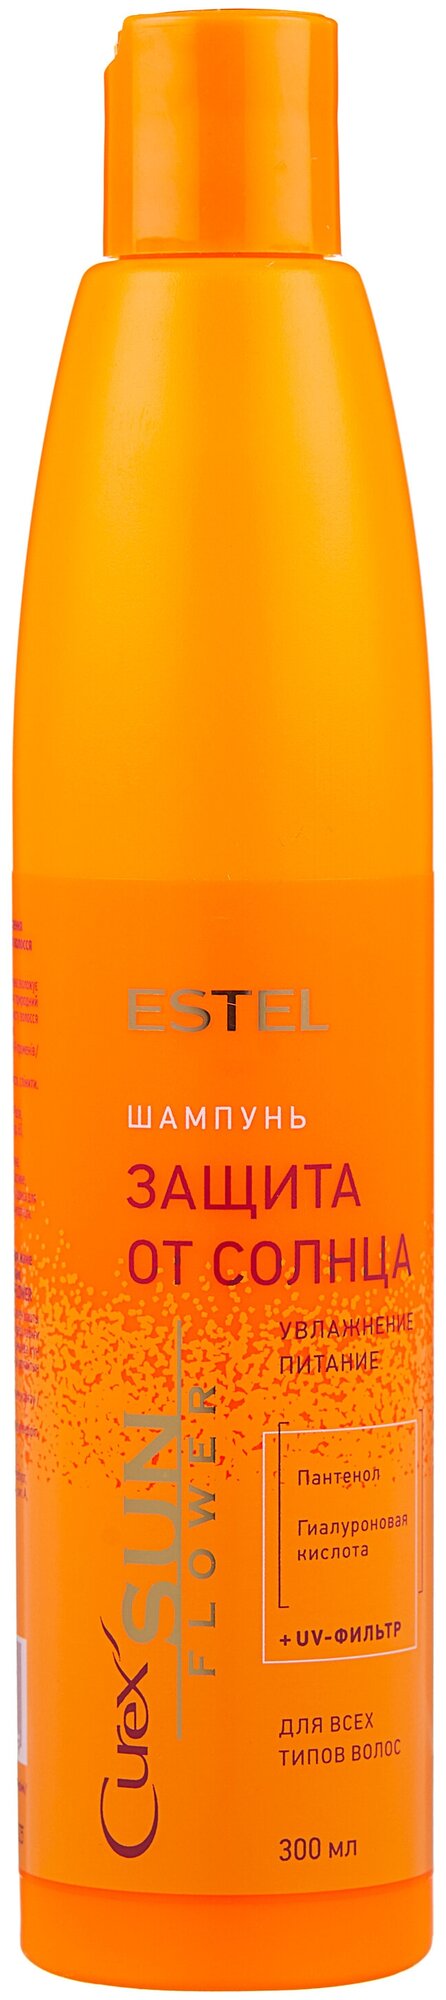 Шампунь-защита от солнца для всех типов волос Estel Professional Curex COLOR SUNFLOWER, 300 мл